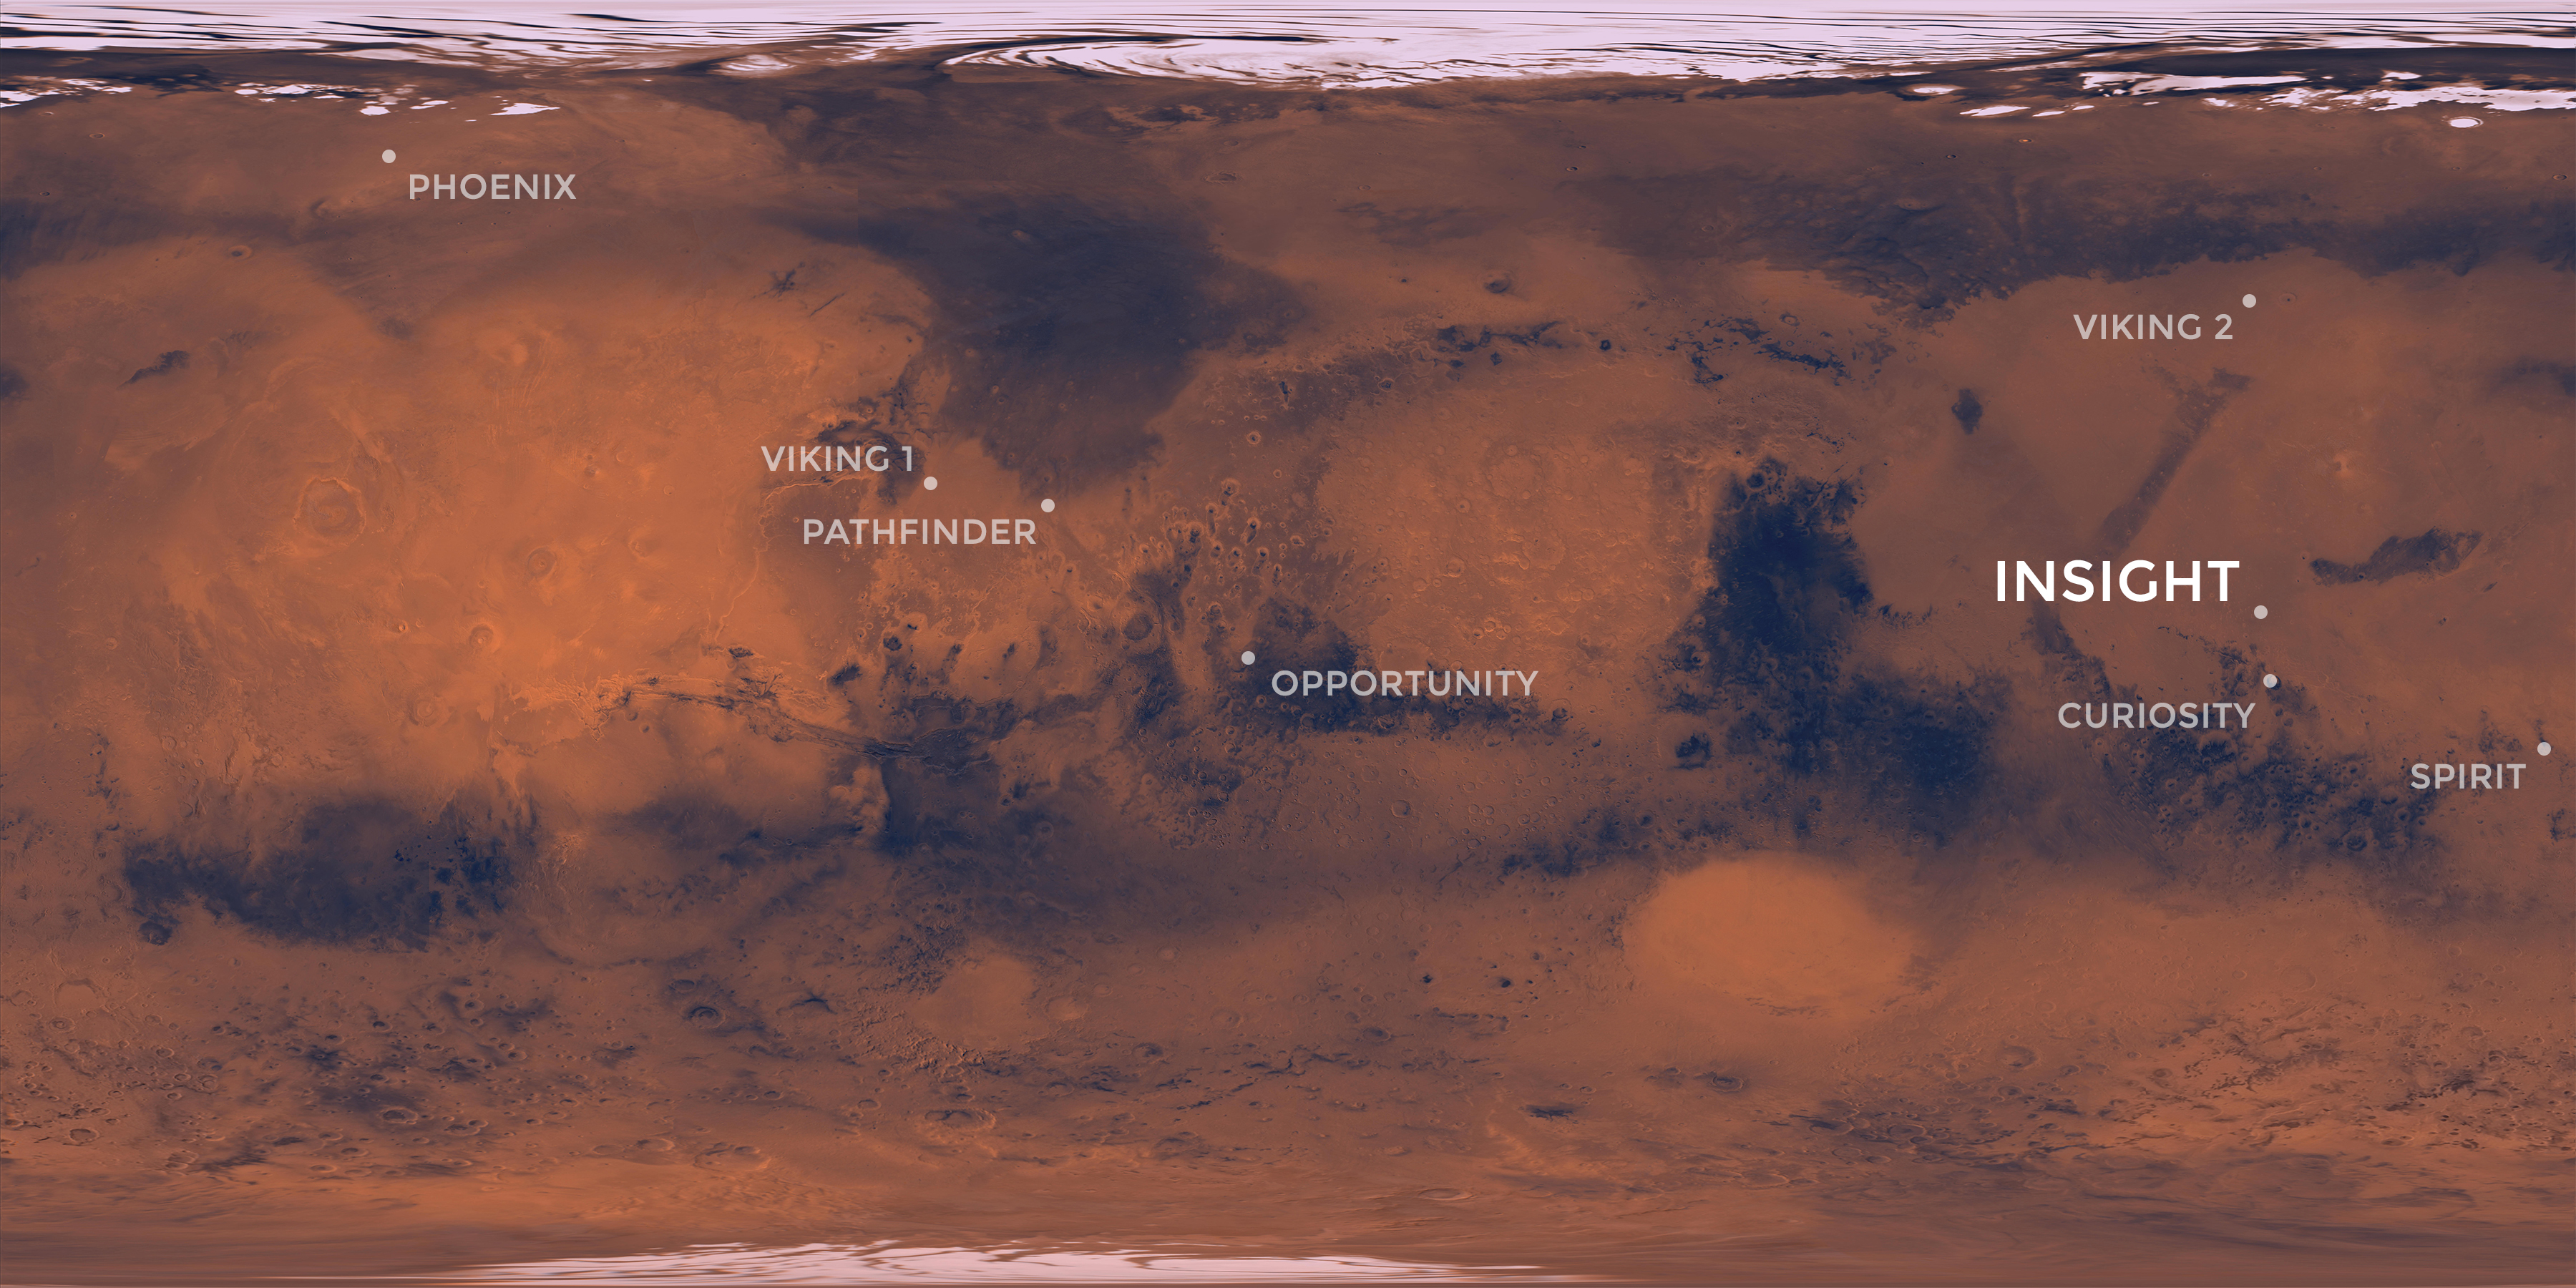 InSight's Landing Site: Elysium Planitia